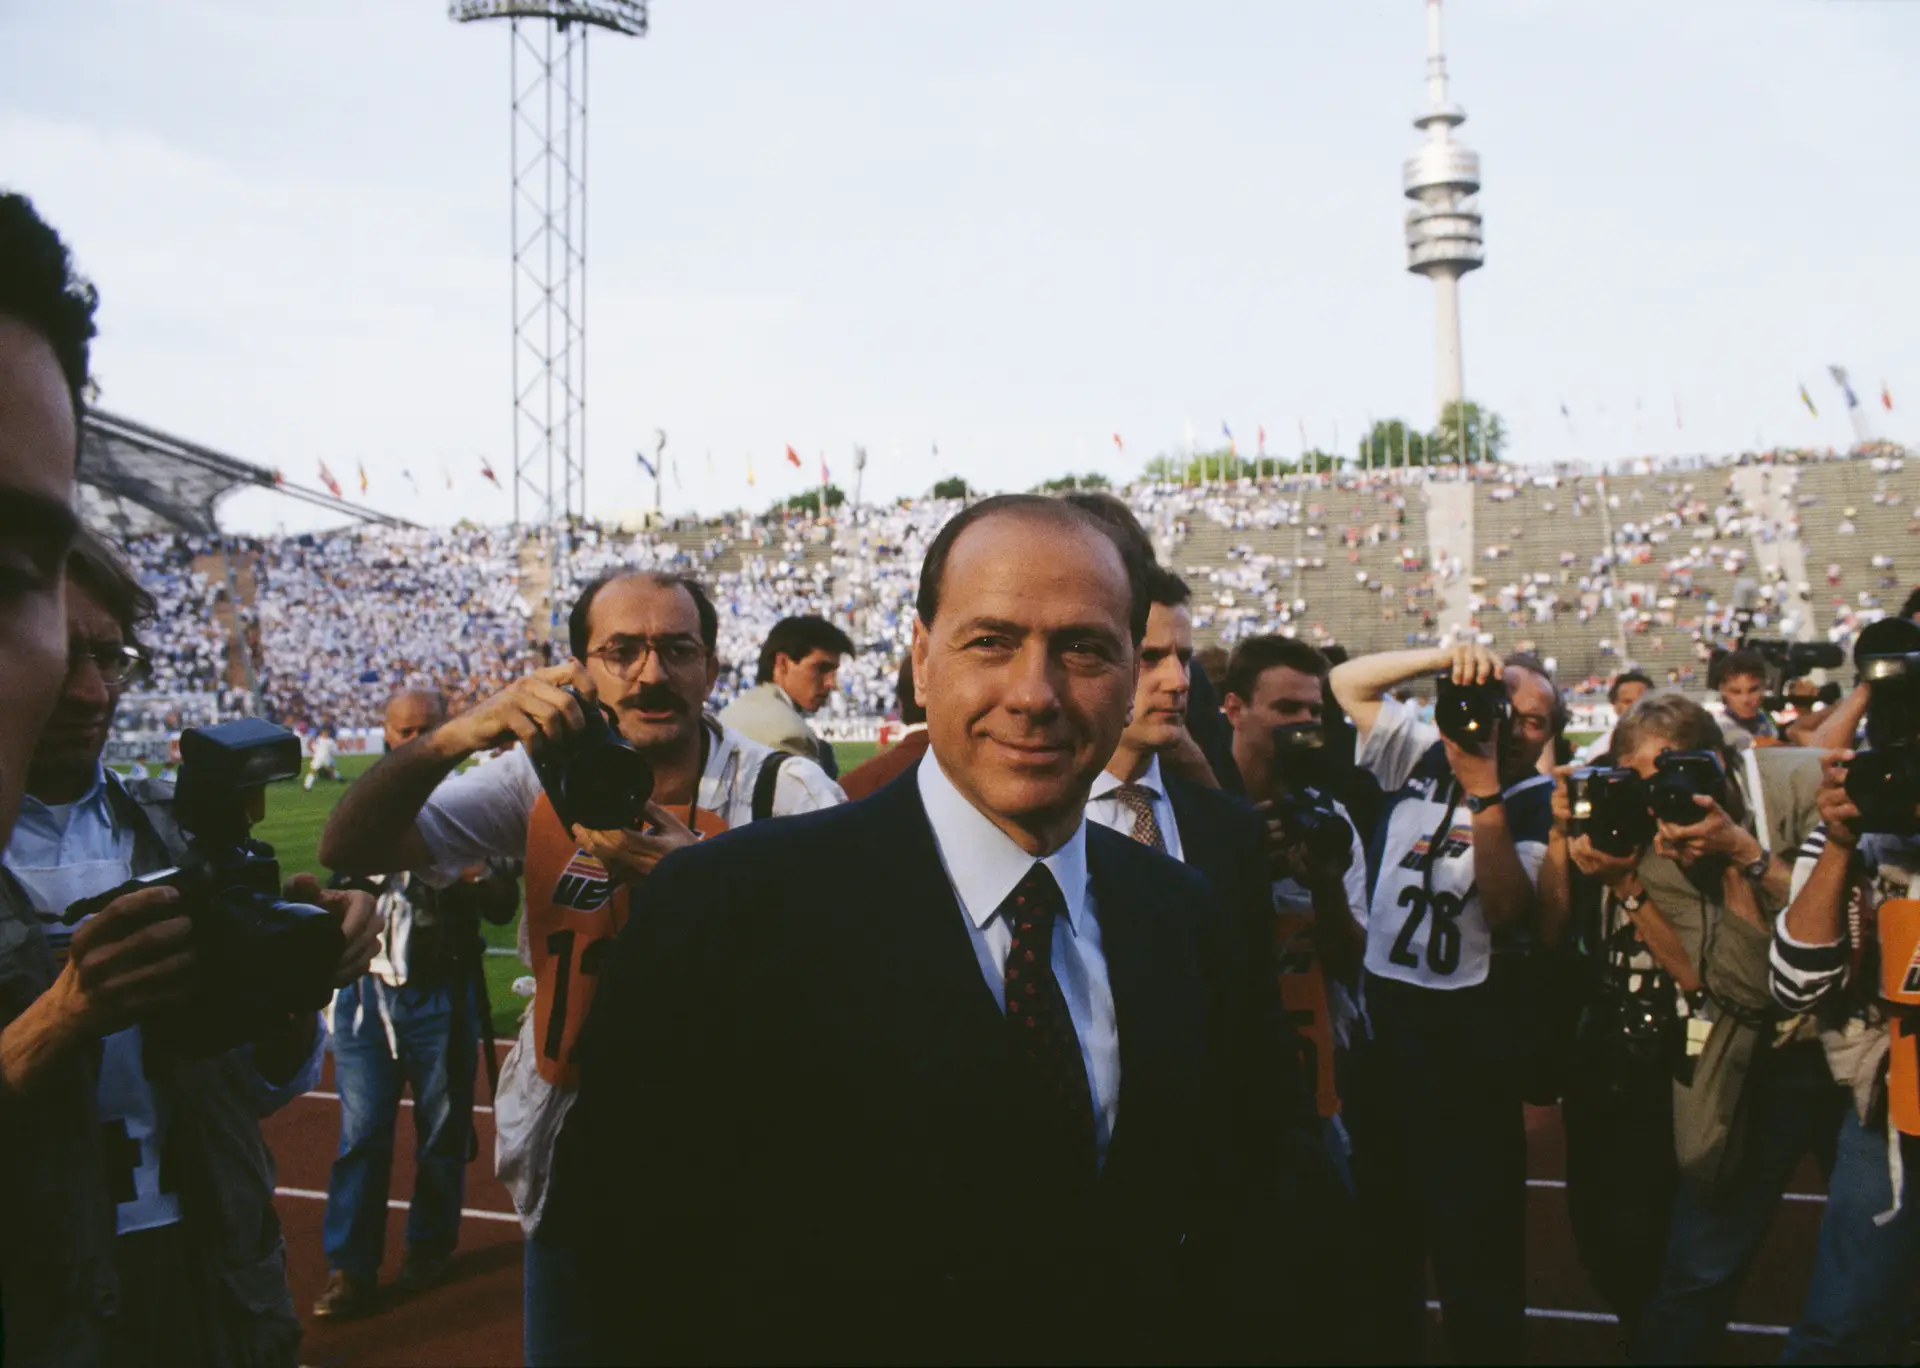 Do fantasma da segunda divisão à glória de ser campeão europeu: como Silvio  Berlusconi transformou o Milan